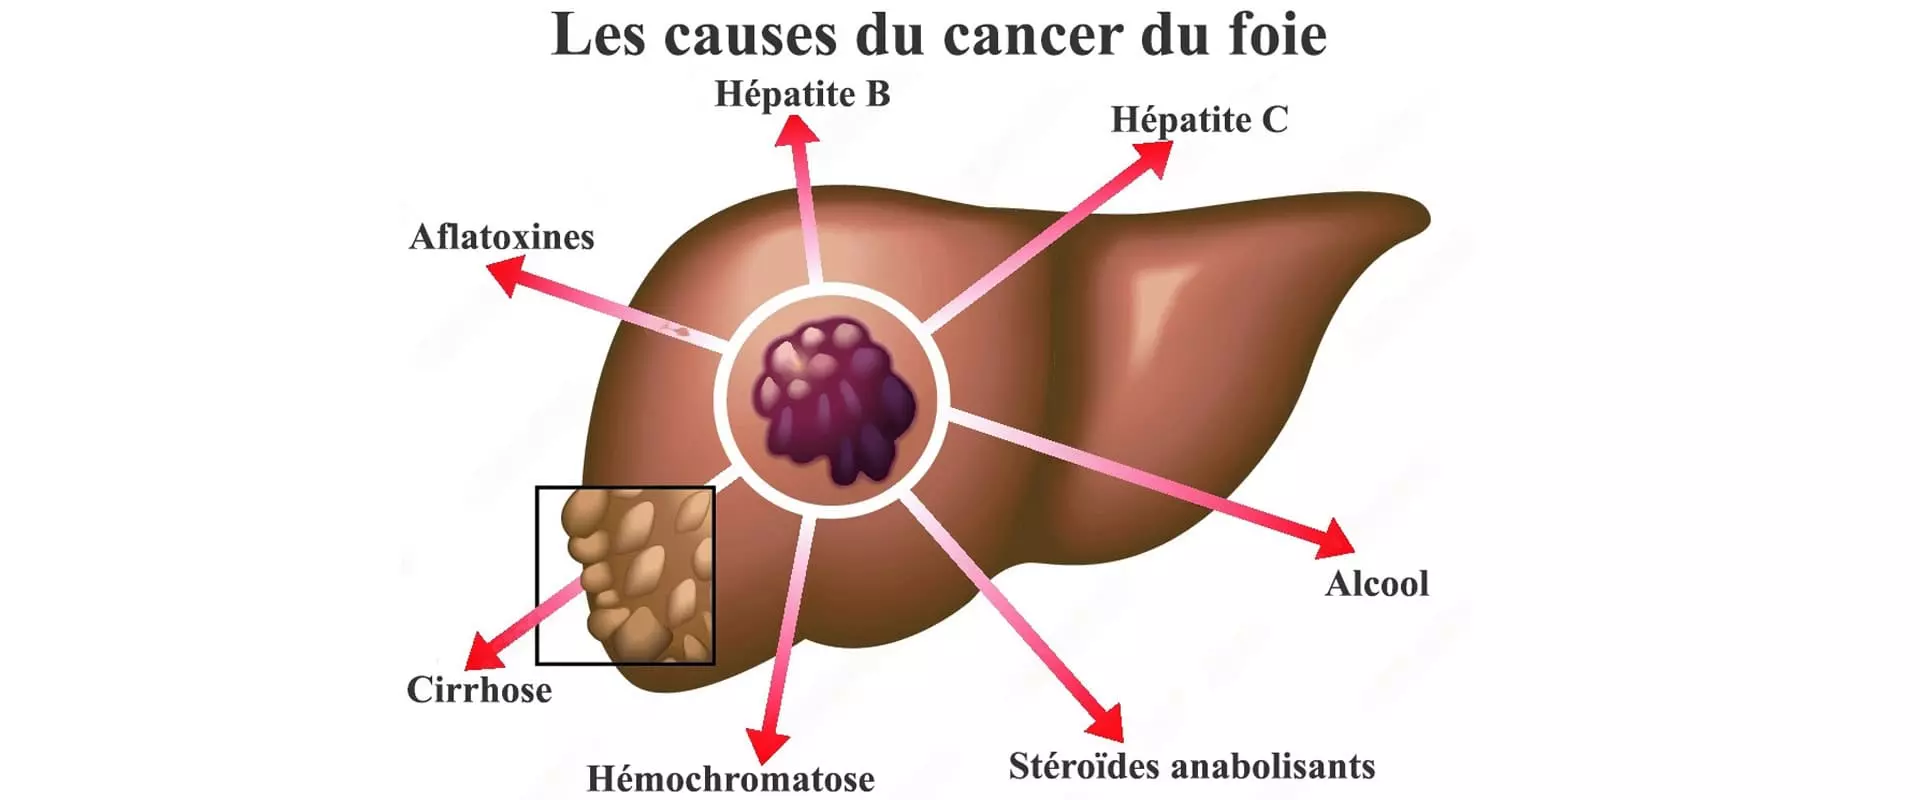 Infographie : Causes du cancer du foie